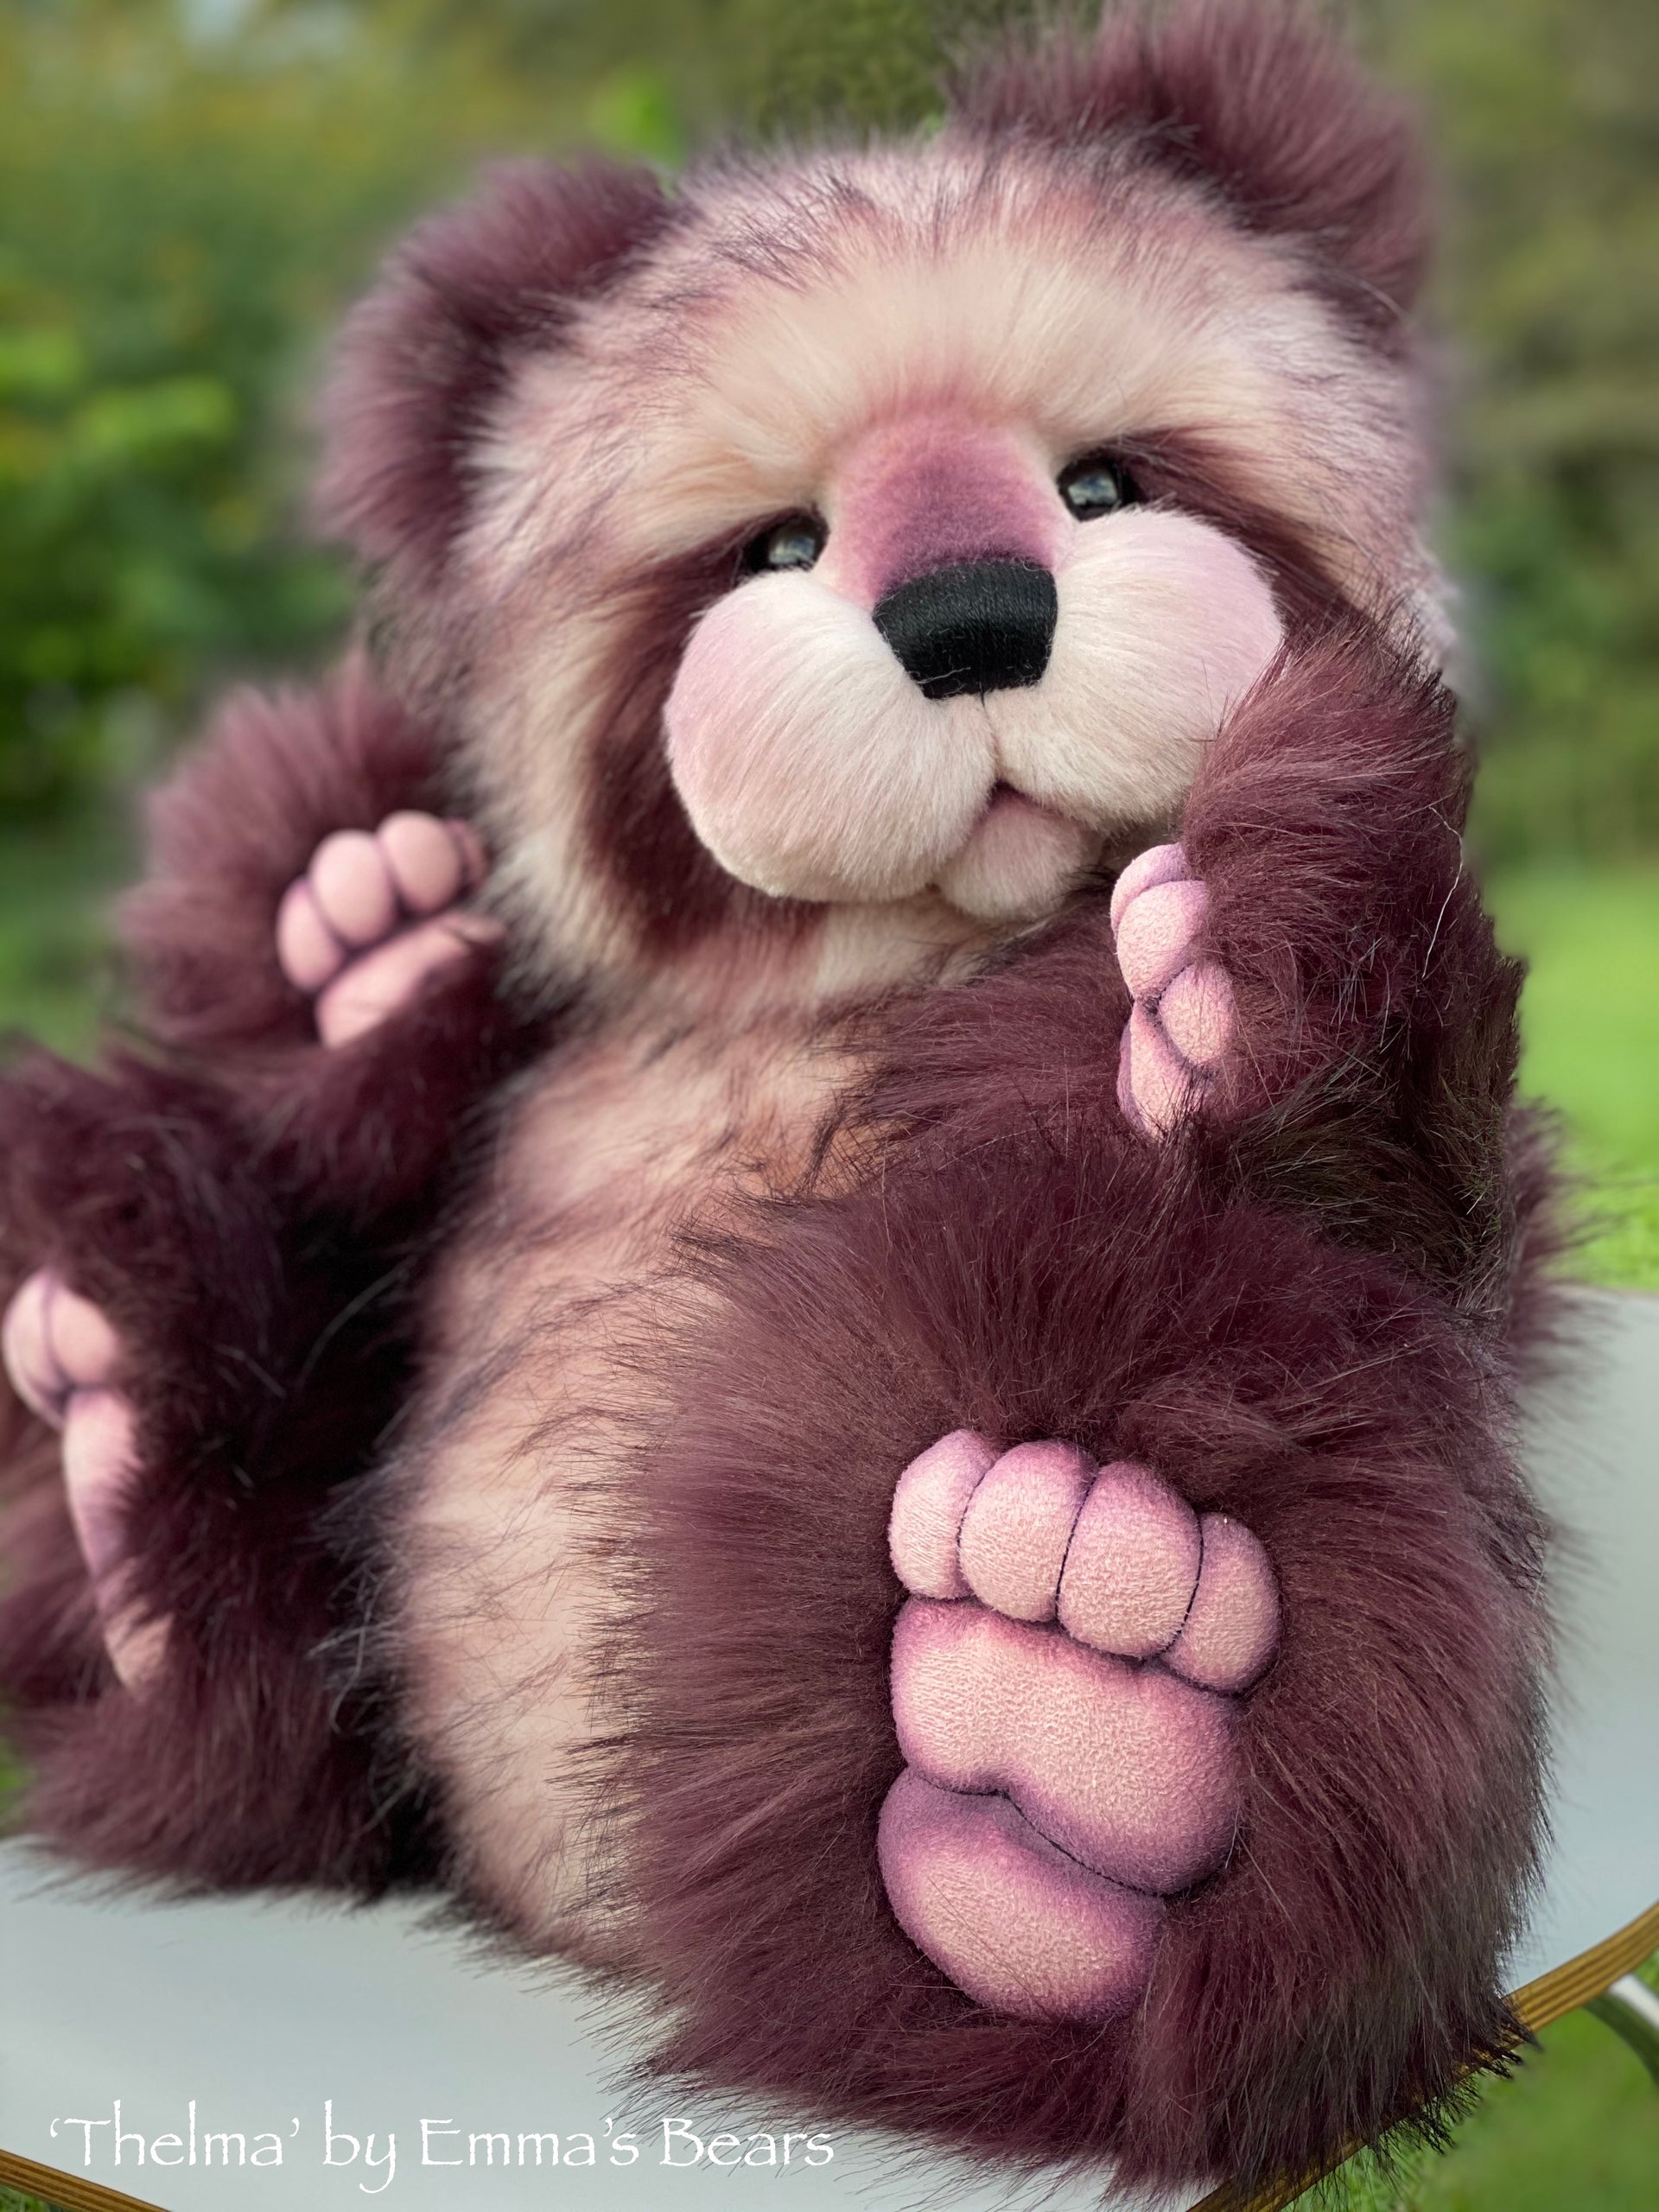 Thelma - 22" faux fur Artist Bear by Emma's Bears - OOAK